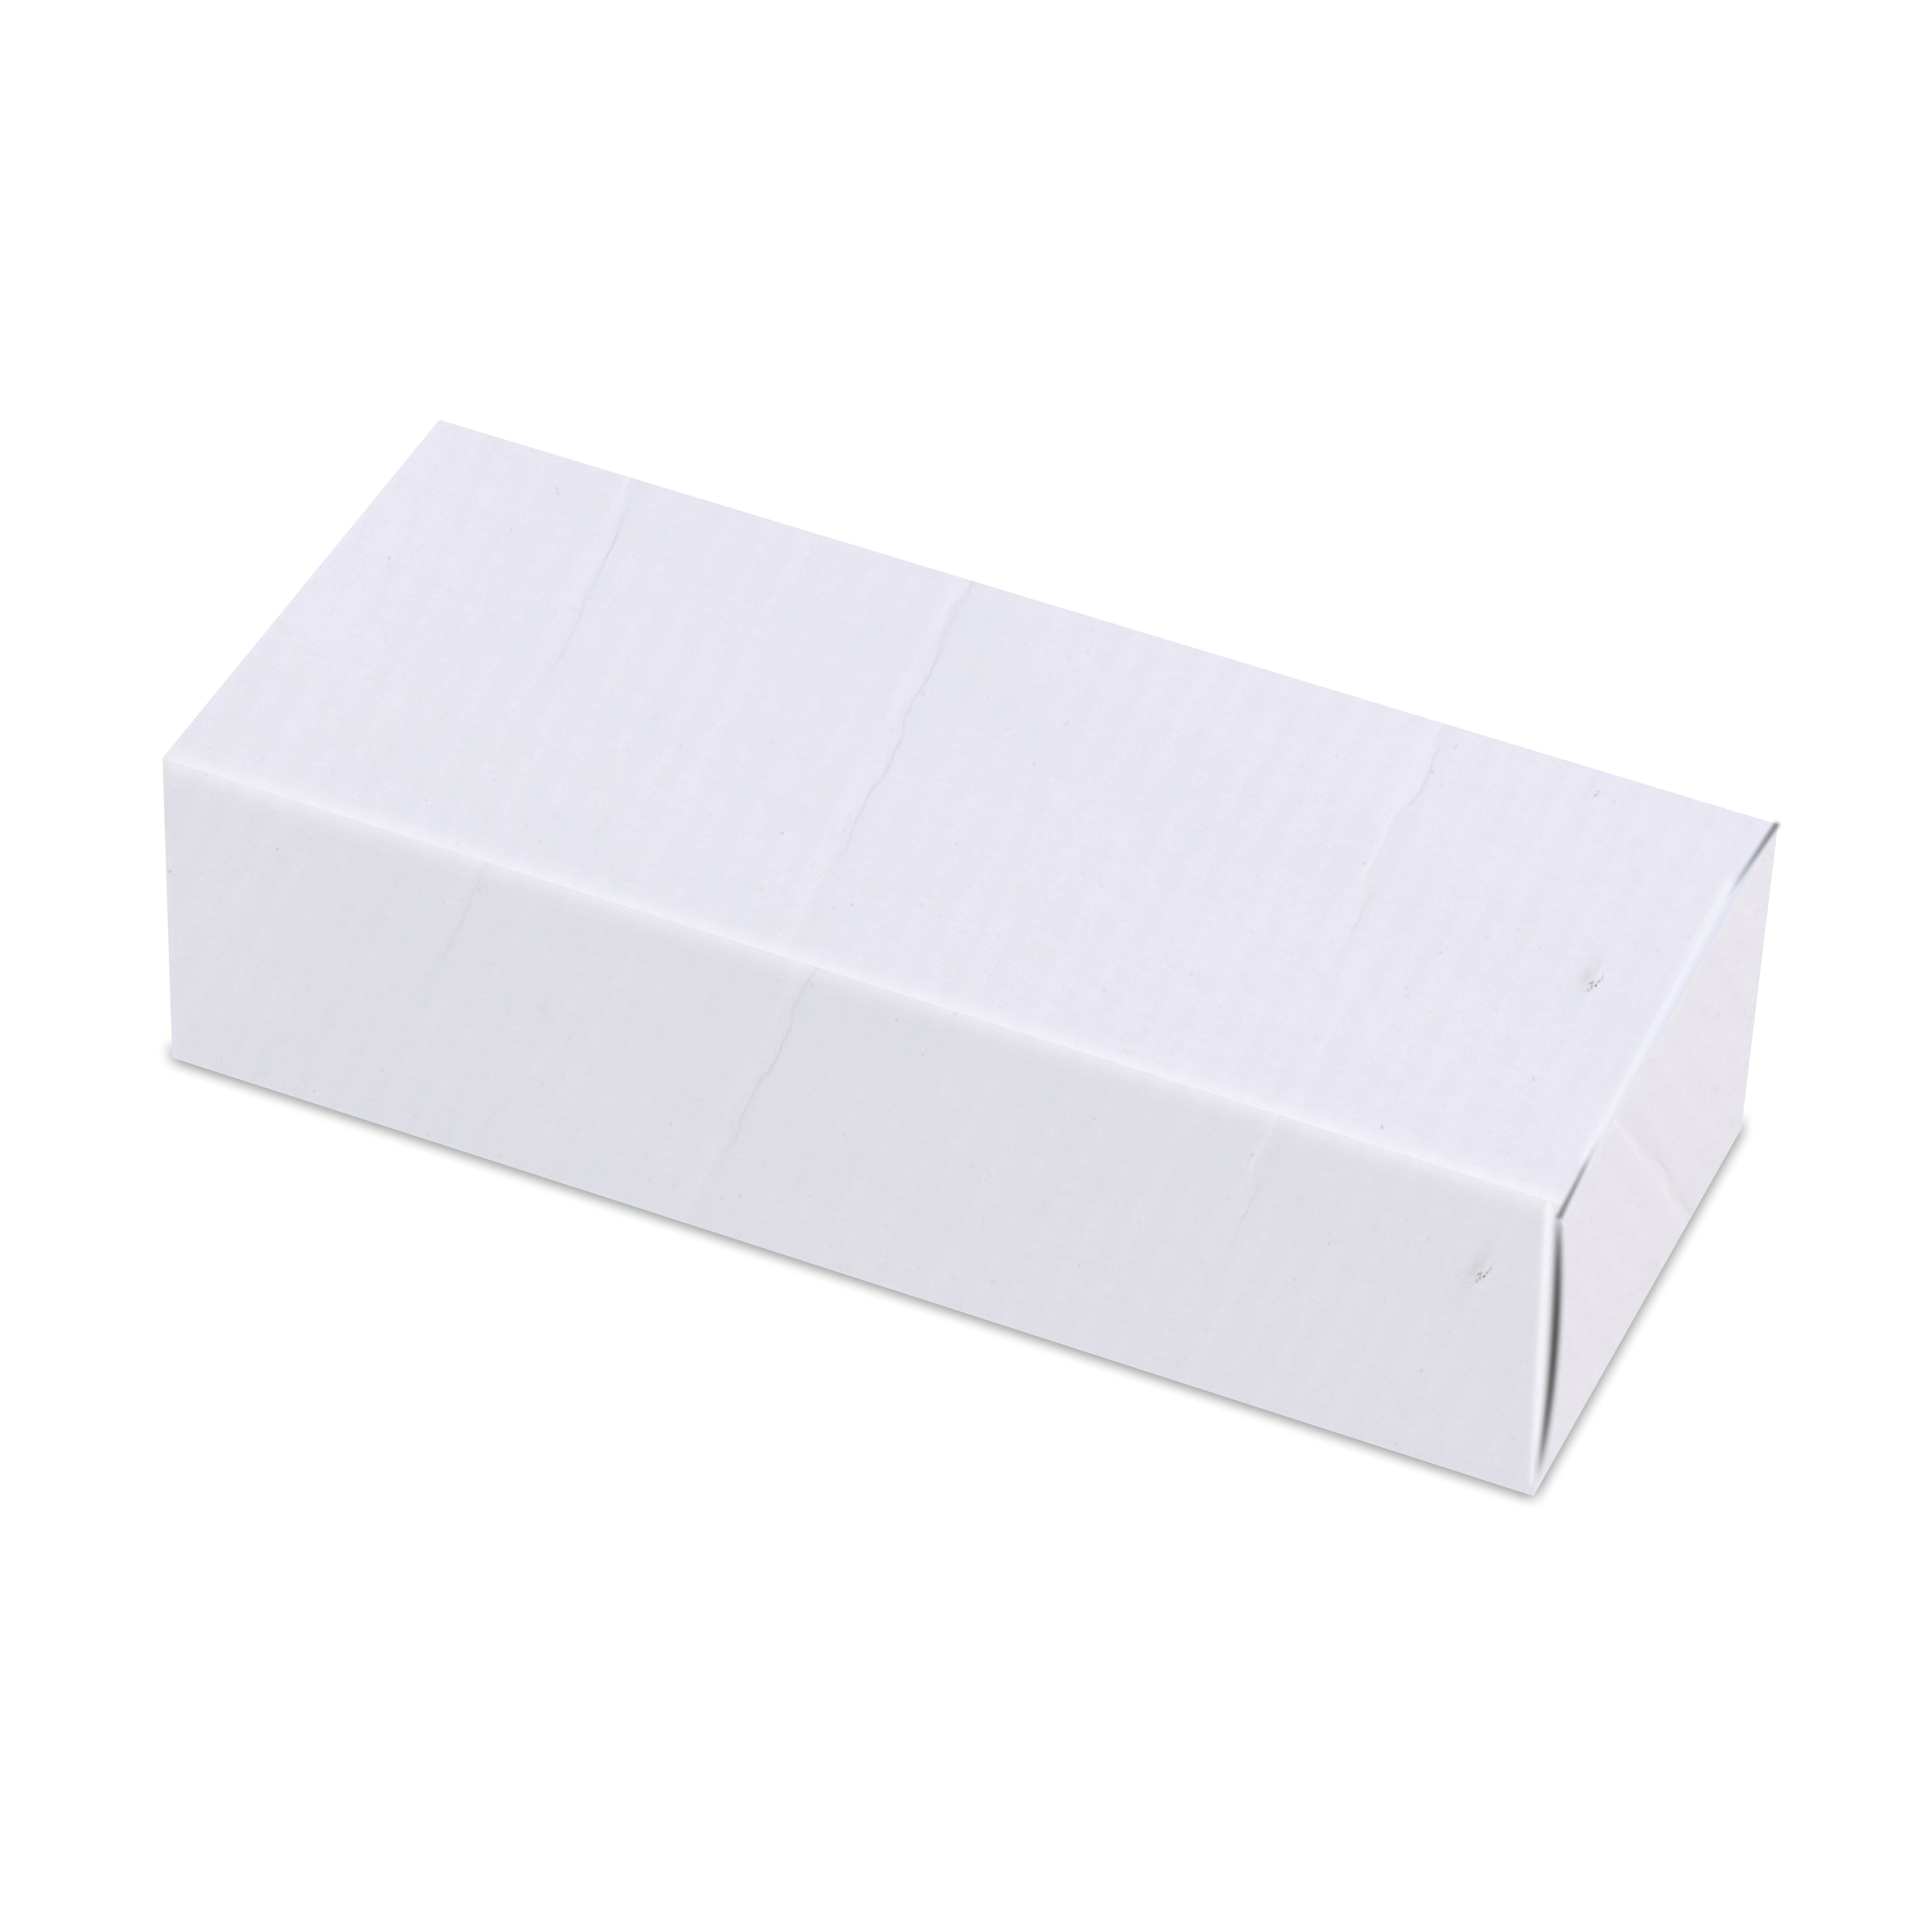 Zenvista Premium White Corrugated Box |15 x 6.7 x 5.5 cm | Pack of 50